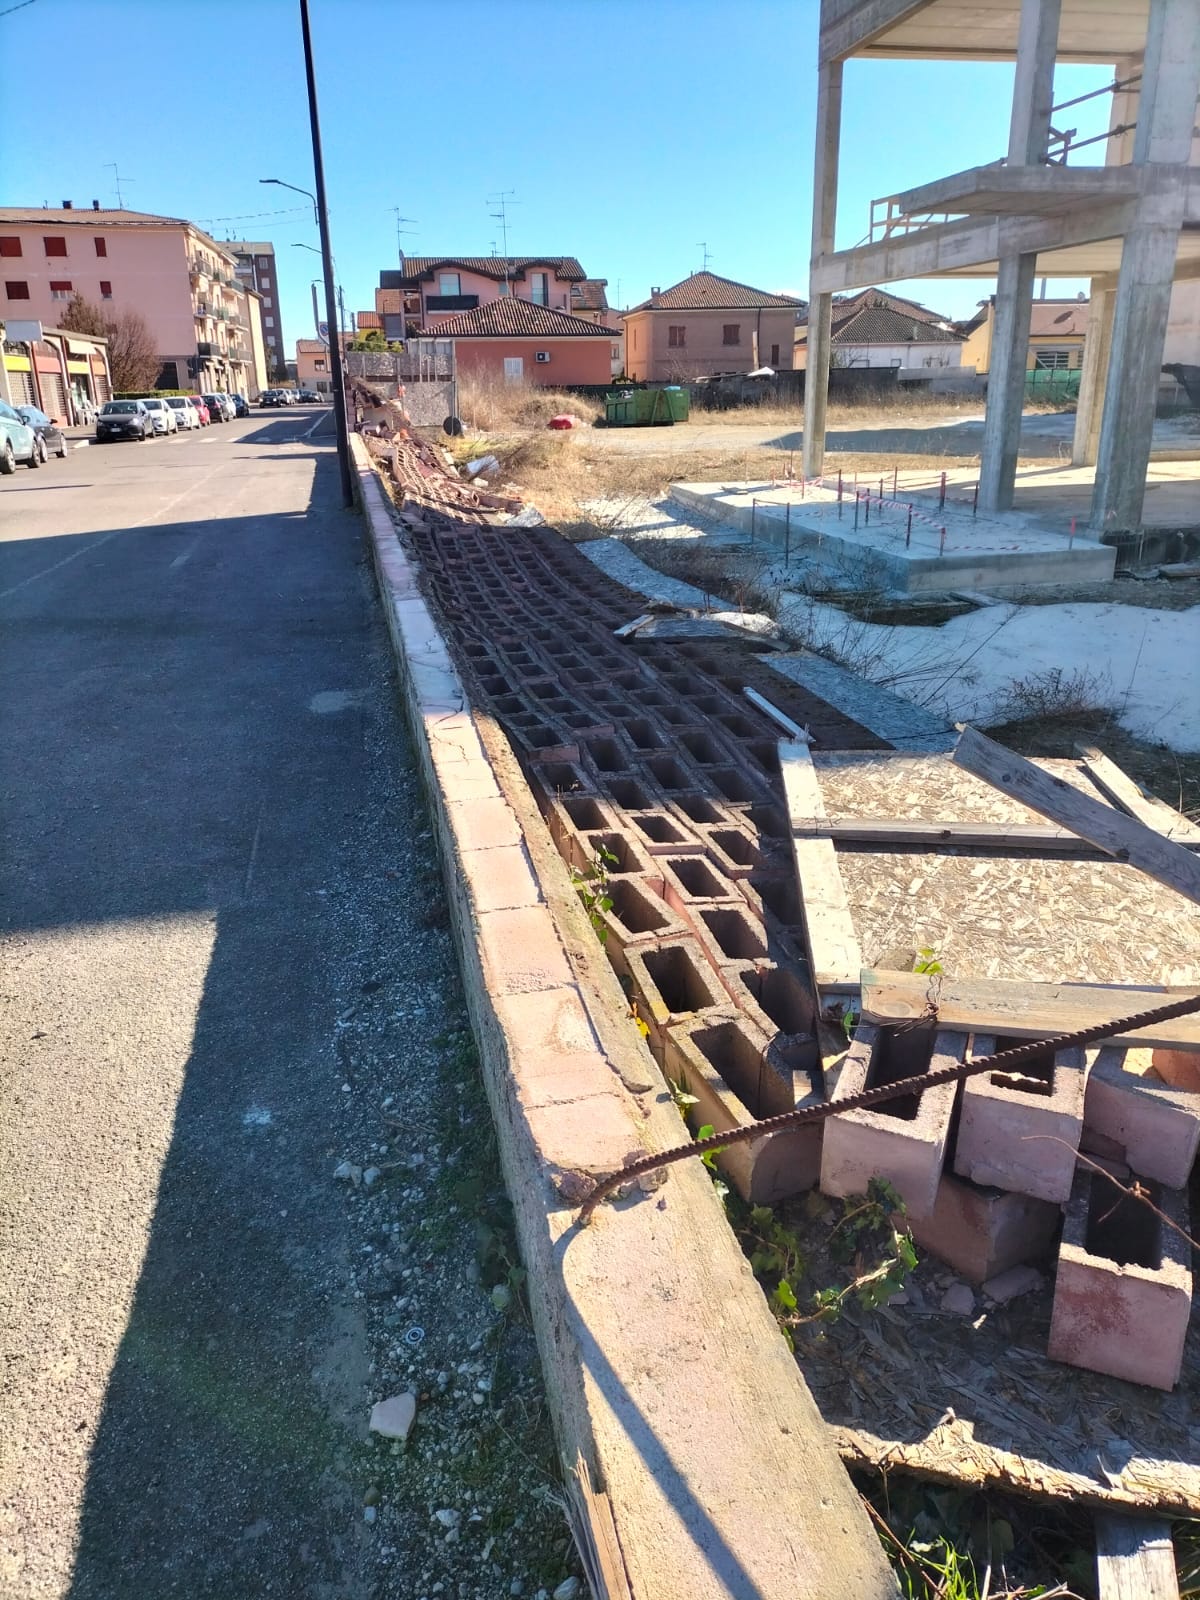 Vento, a Limbiate cade recinzione cantiere scuola “Anna Frank”, e problemi al tetto di un condominio